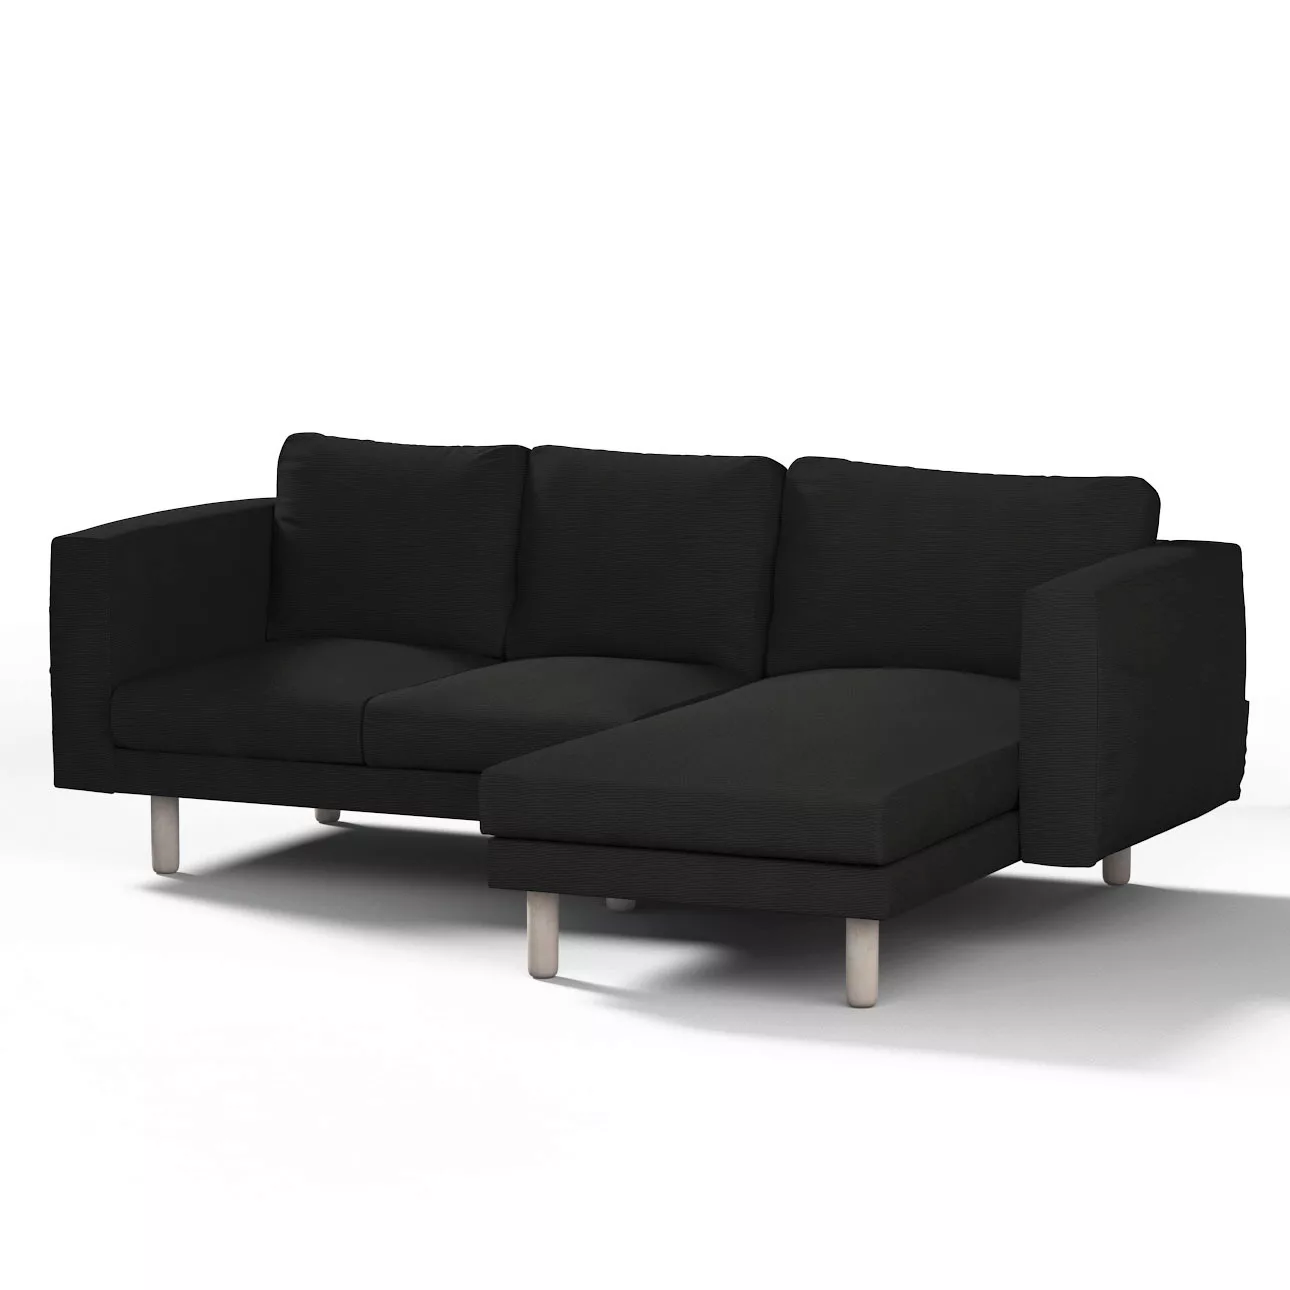 Bezug für Norsborg 3-Sitzer Sofa mit Recamiere, schwarz, Norsborg Bezug für günstig online kaufen